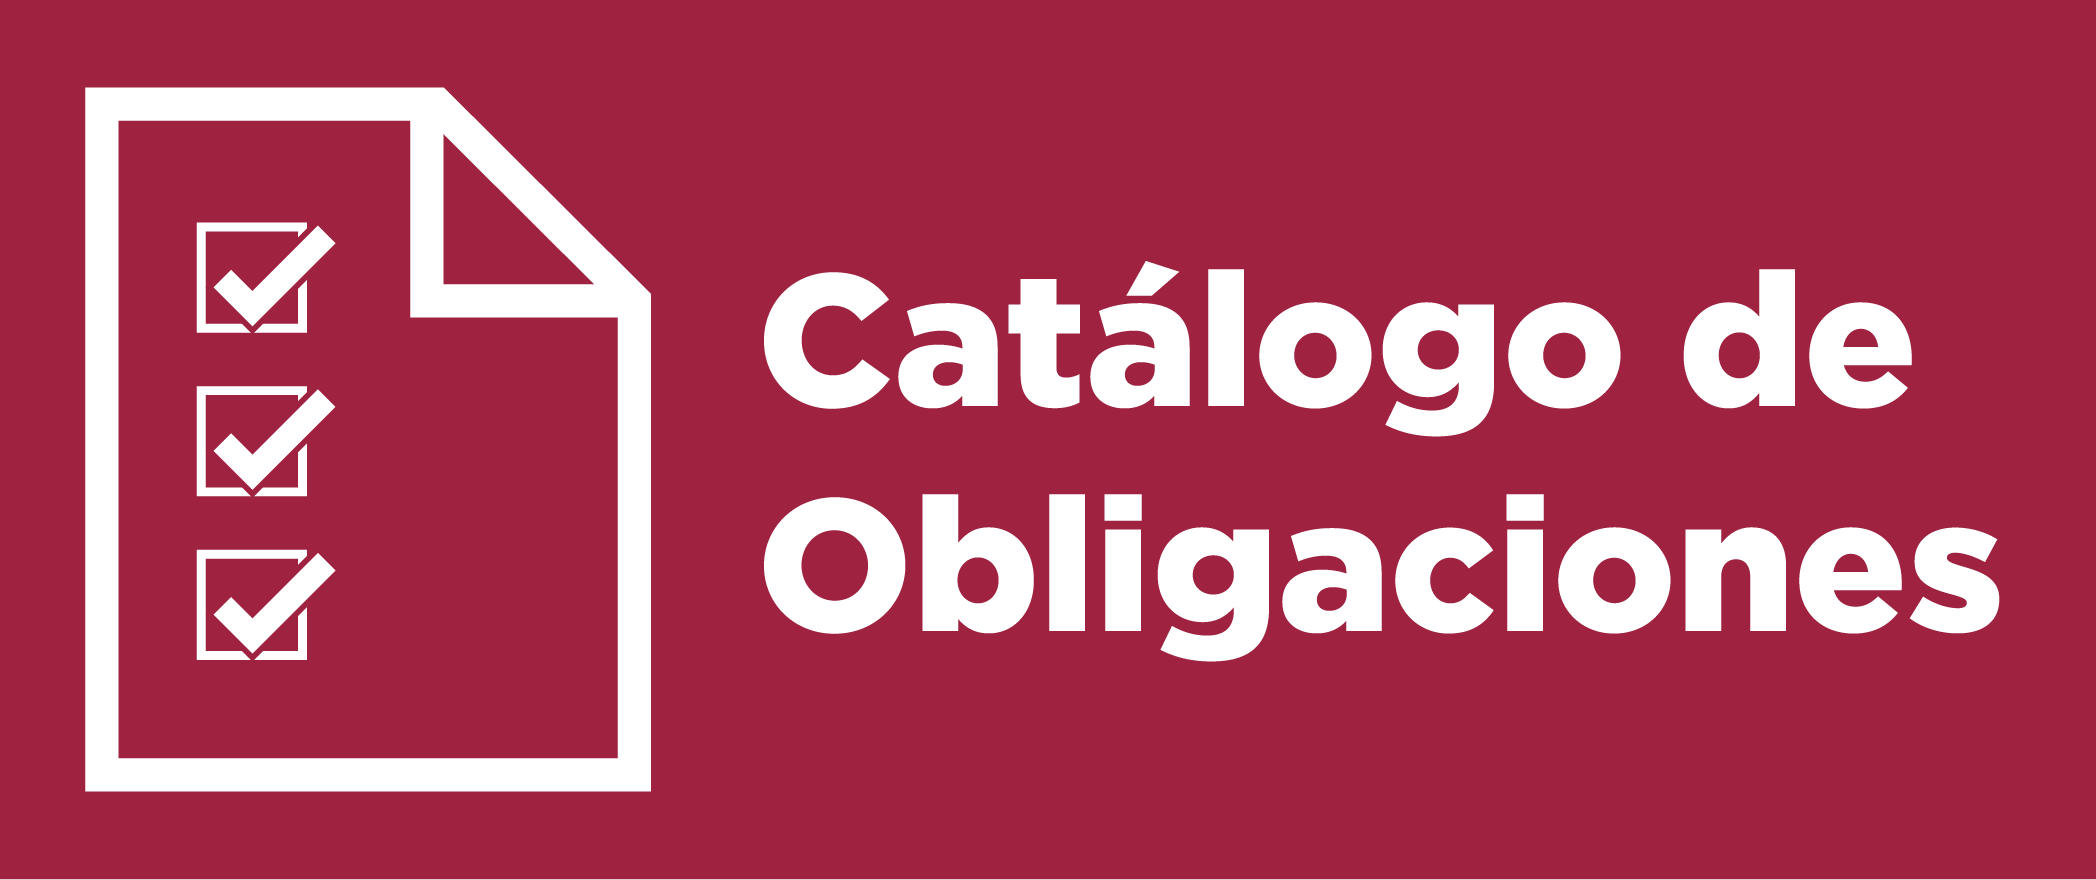 catálogo de obligaciones